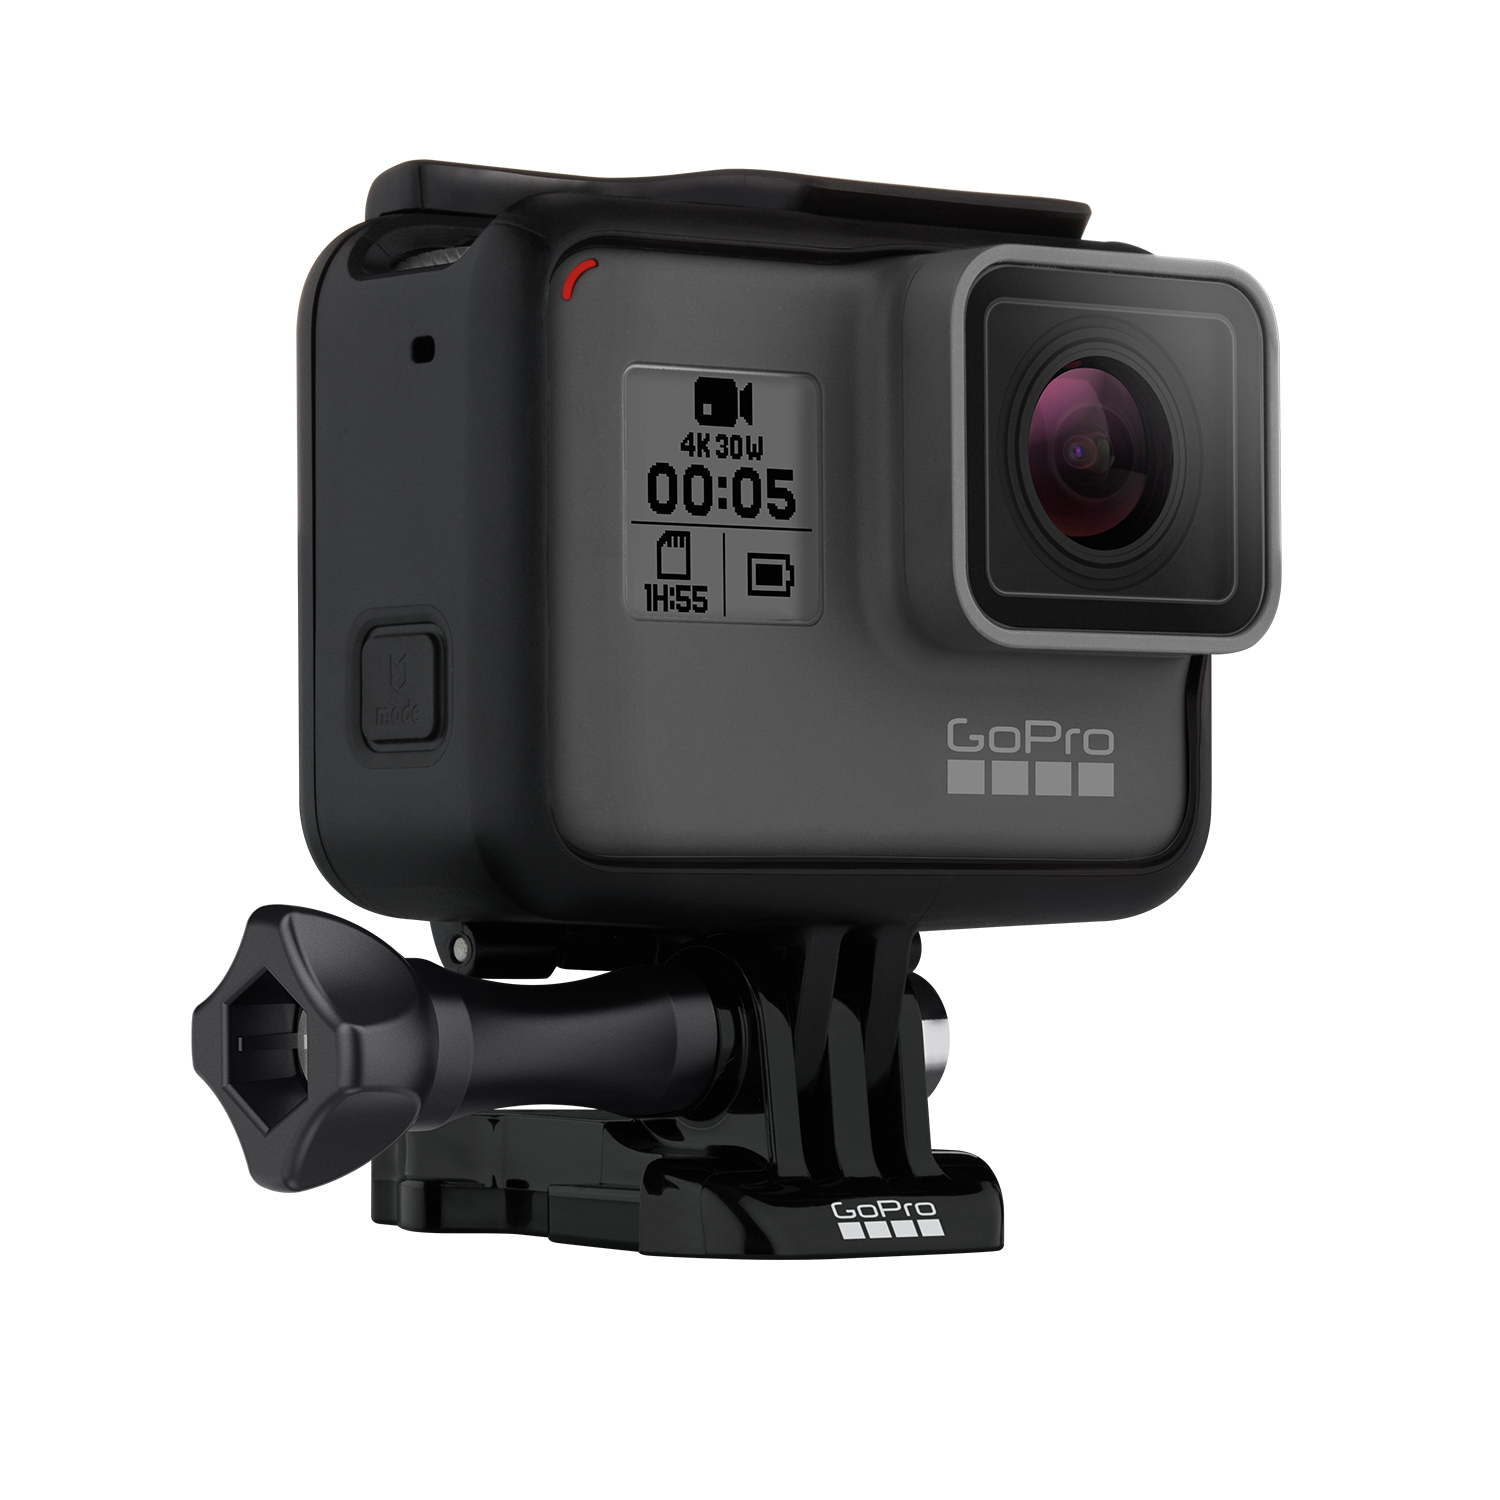 كل ما تود معرفته حول مميزات كاميرا GoPro Hero 5 - نيوتك | New tech